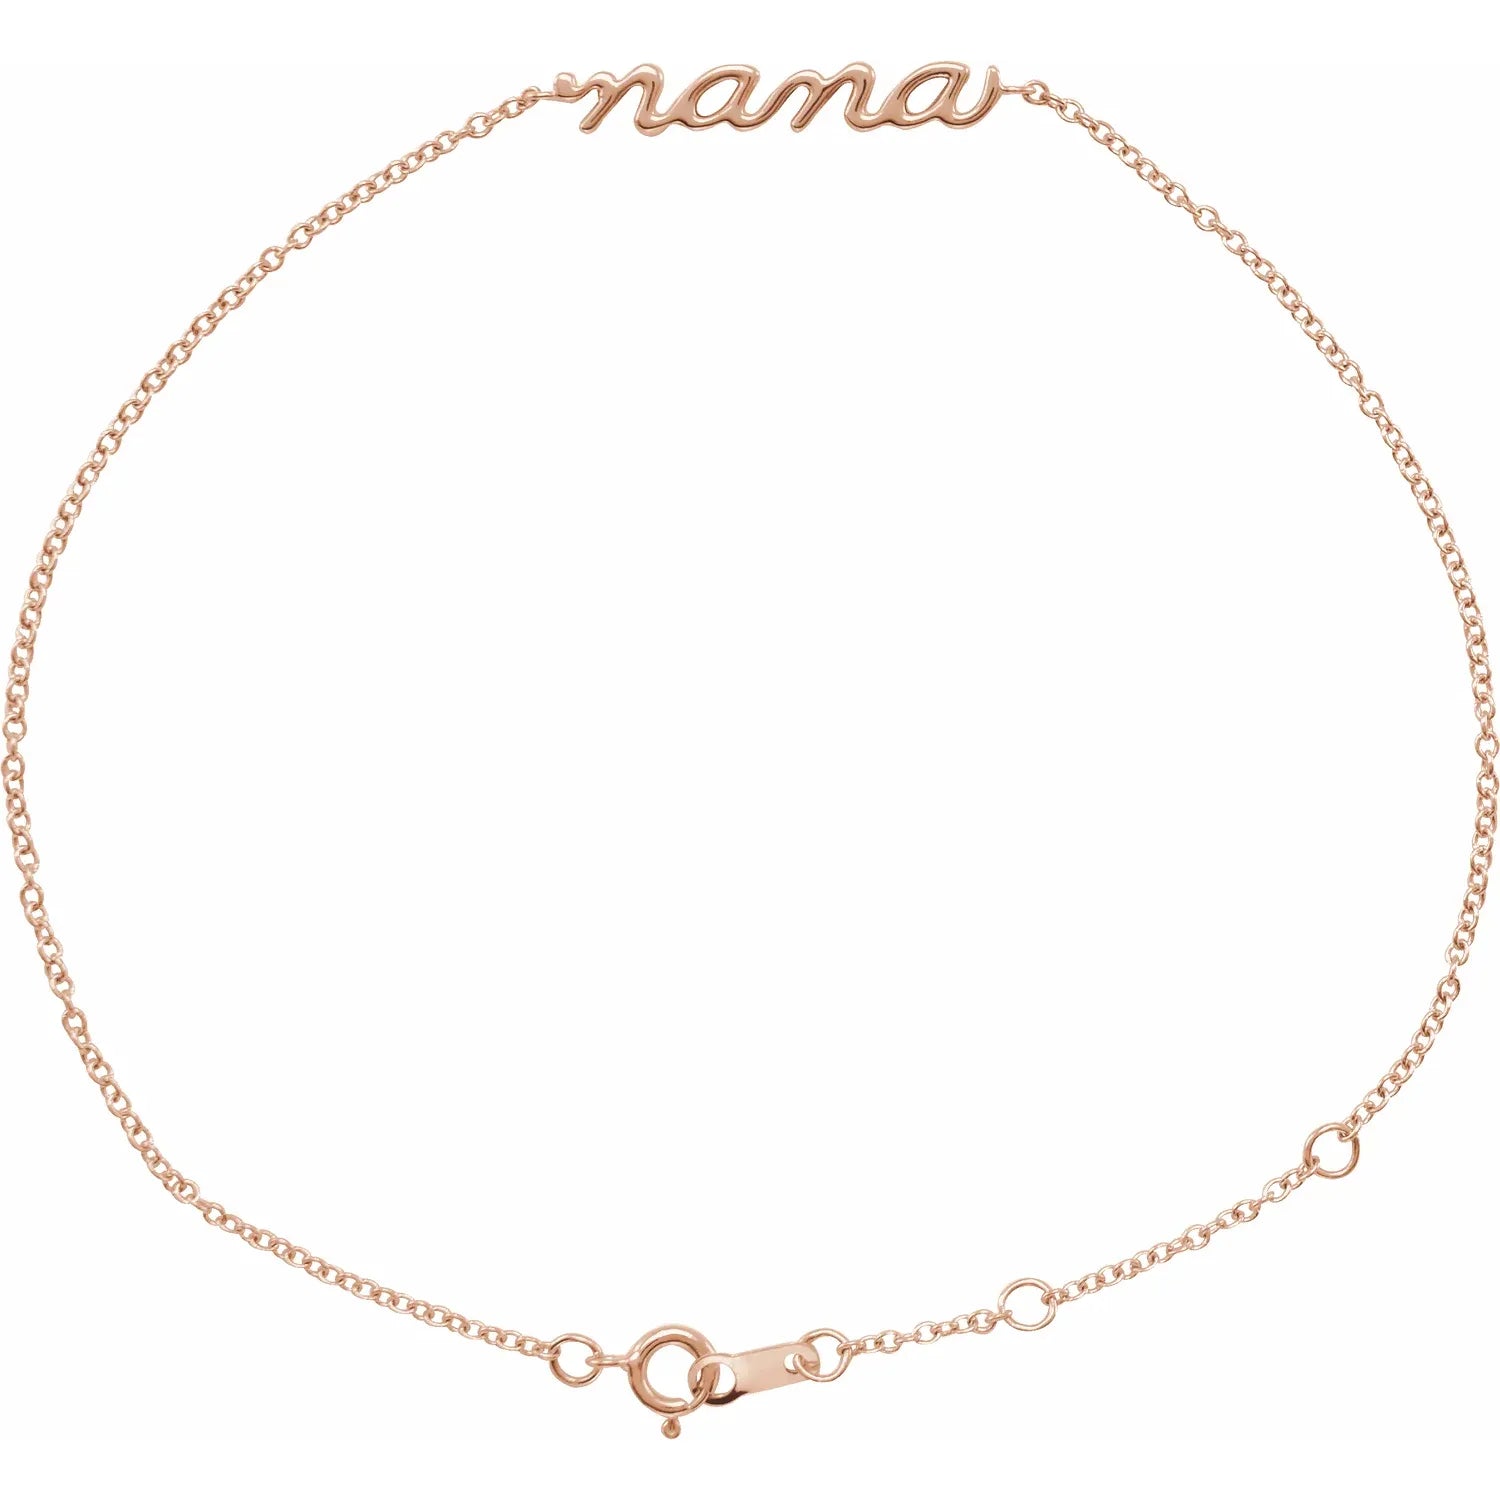 Bracelet - Adjustable - "Nana" Script   #3220